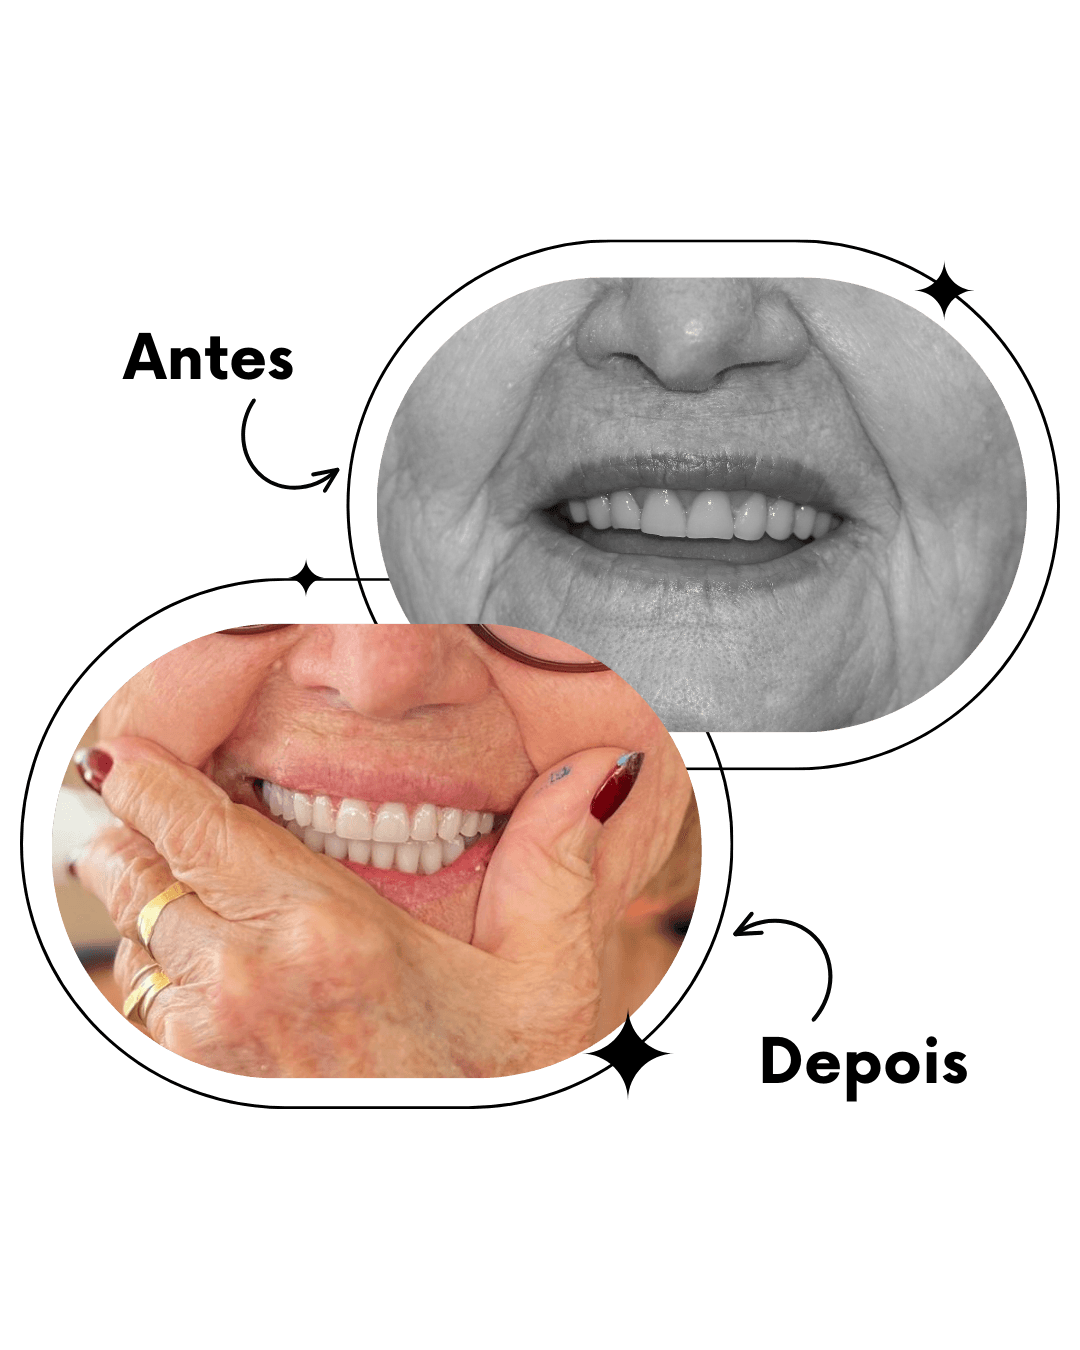 Dentista em Ceilândia realizando implantes dentários